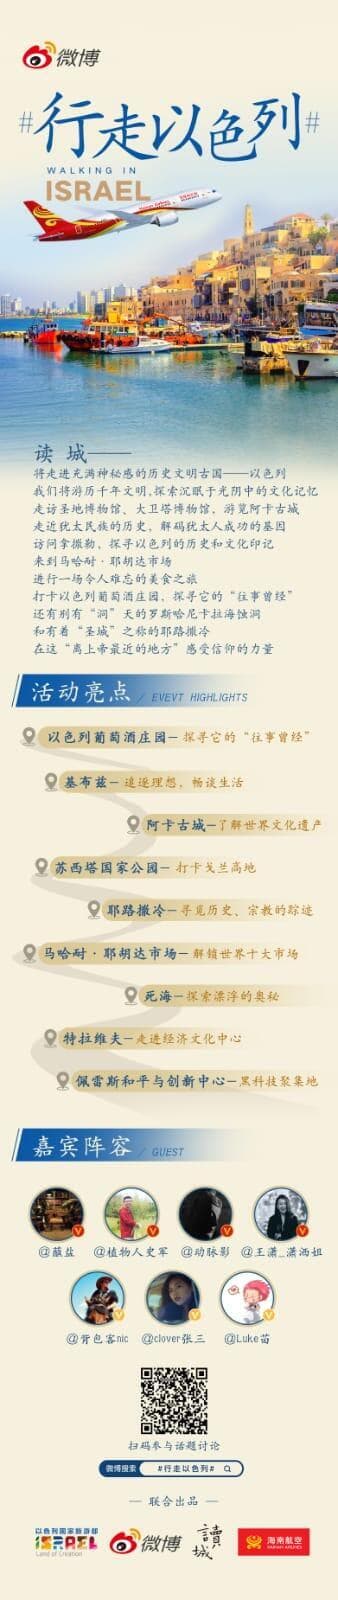 הקמפיין של משרד התיירות ברשת וייבו הסינית